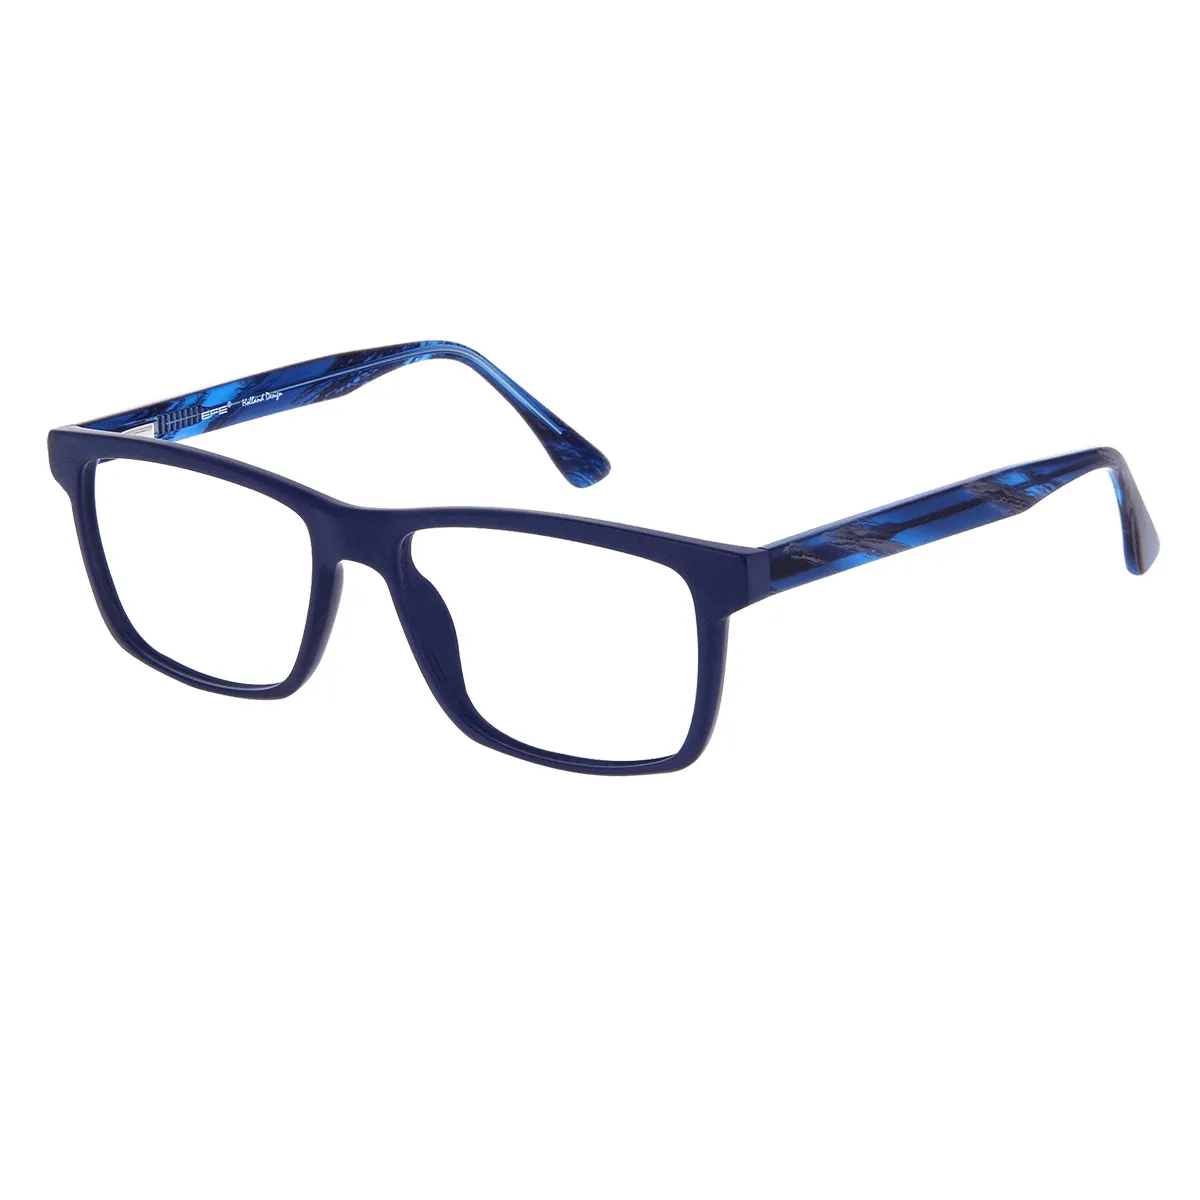 Alfred - Rectangle Blue Glasses for Men - EFE